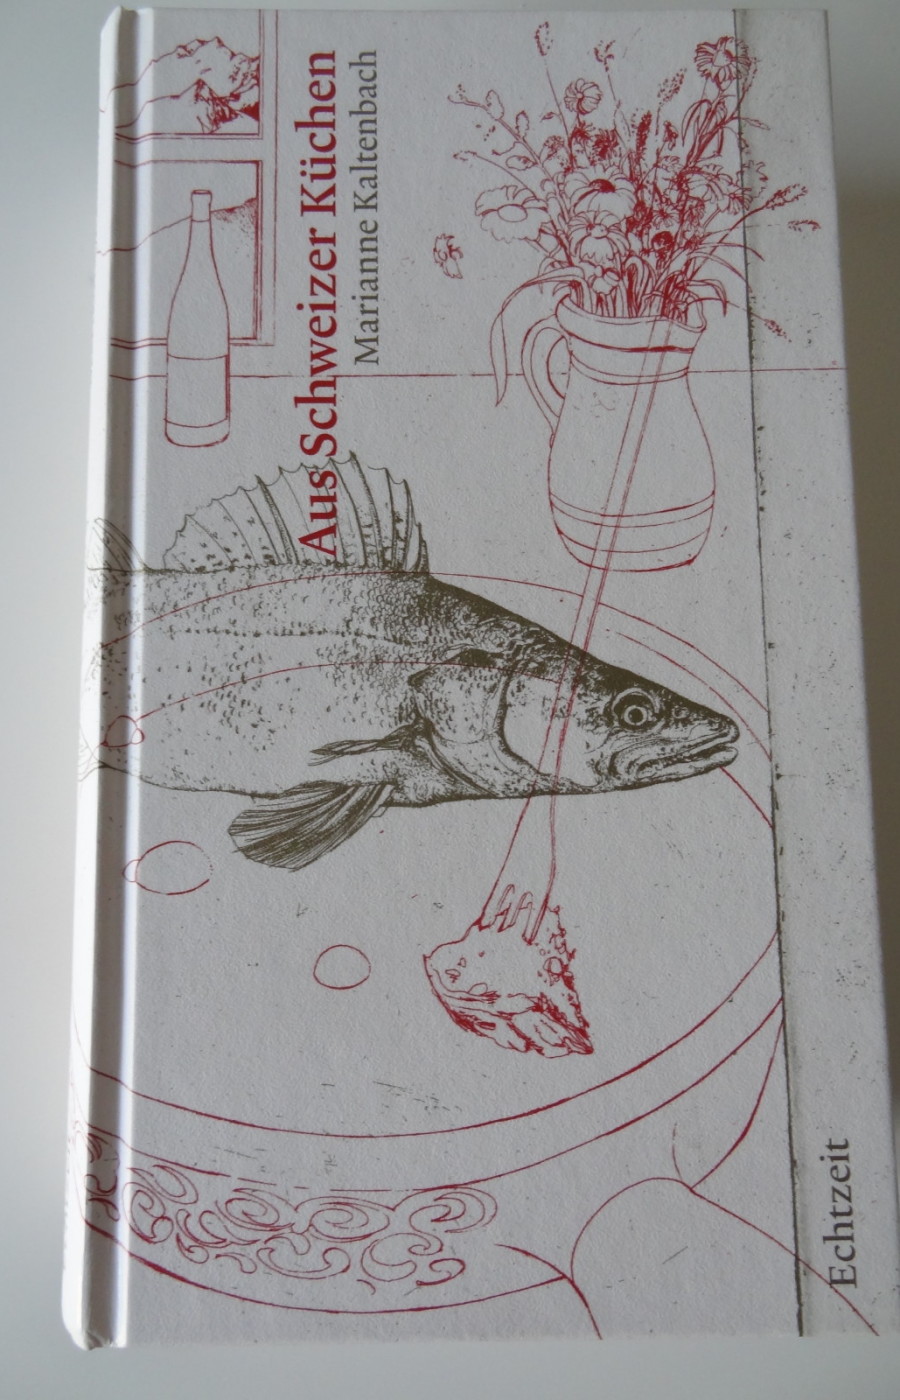 Kochbuch "Aus Schweizer Küchen"